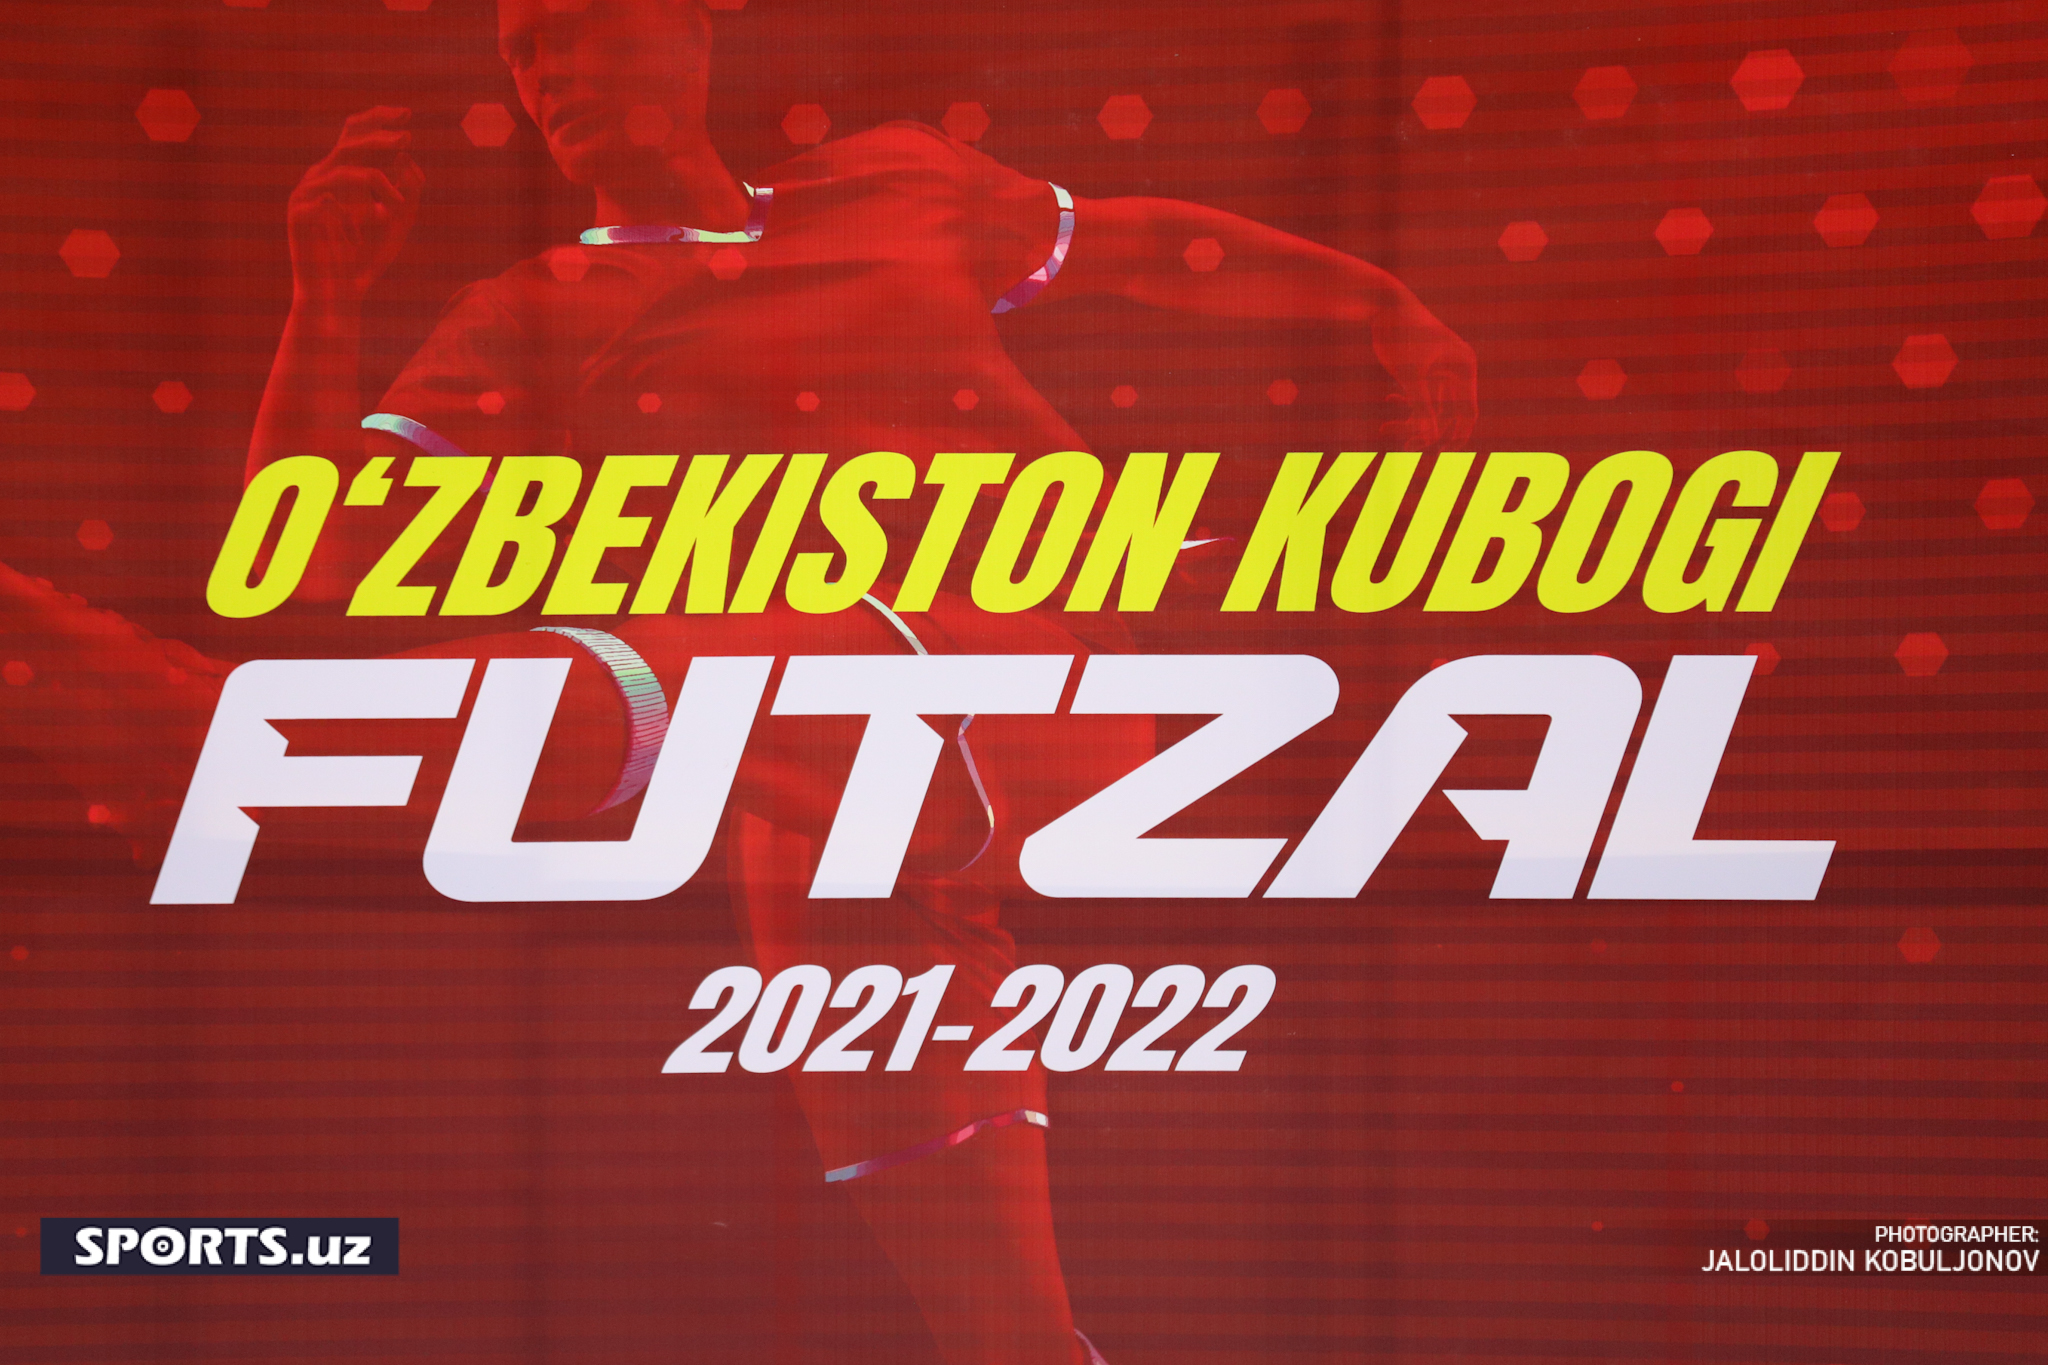 Futsal. Paxtakor - Jizzax Kenteks, Cup final 05/06/2022